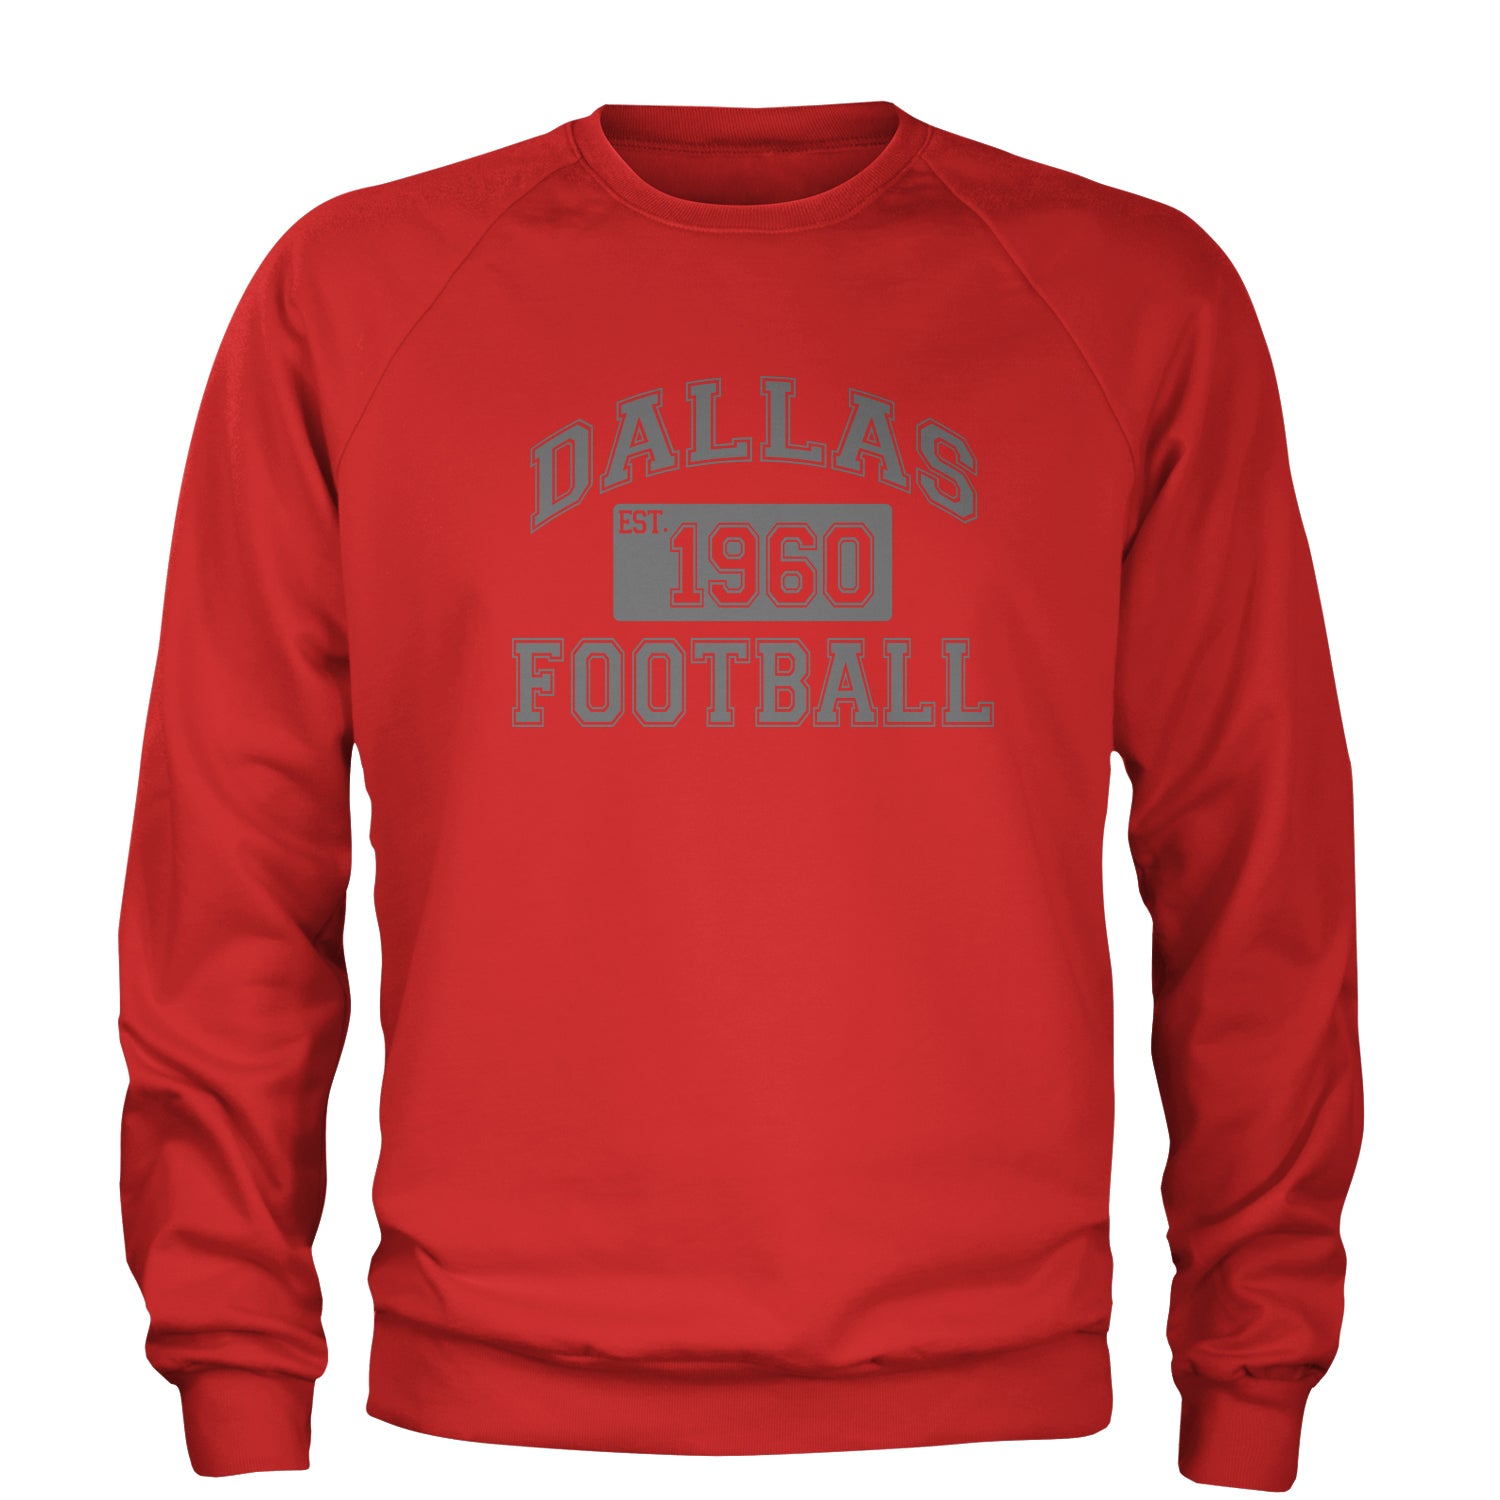 Dallas Football Established 1960 Adult Crewneck Sweatshirt boys, dem by Expression Tees